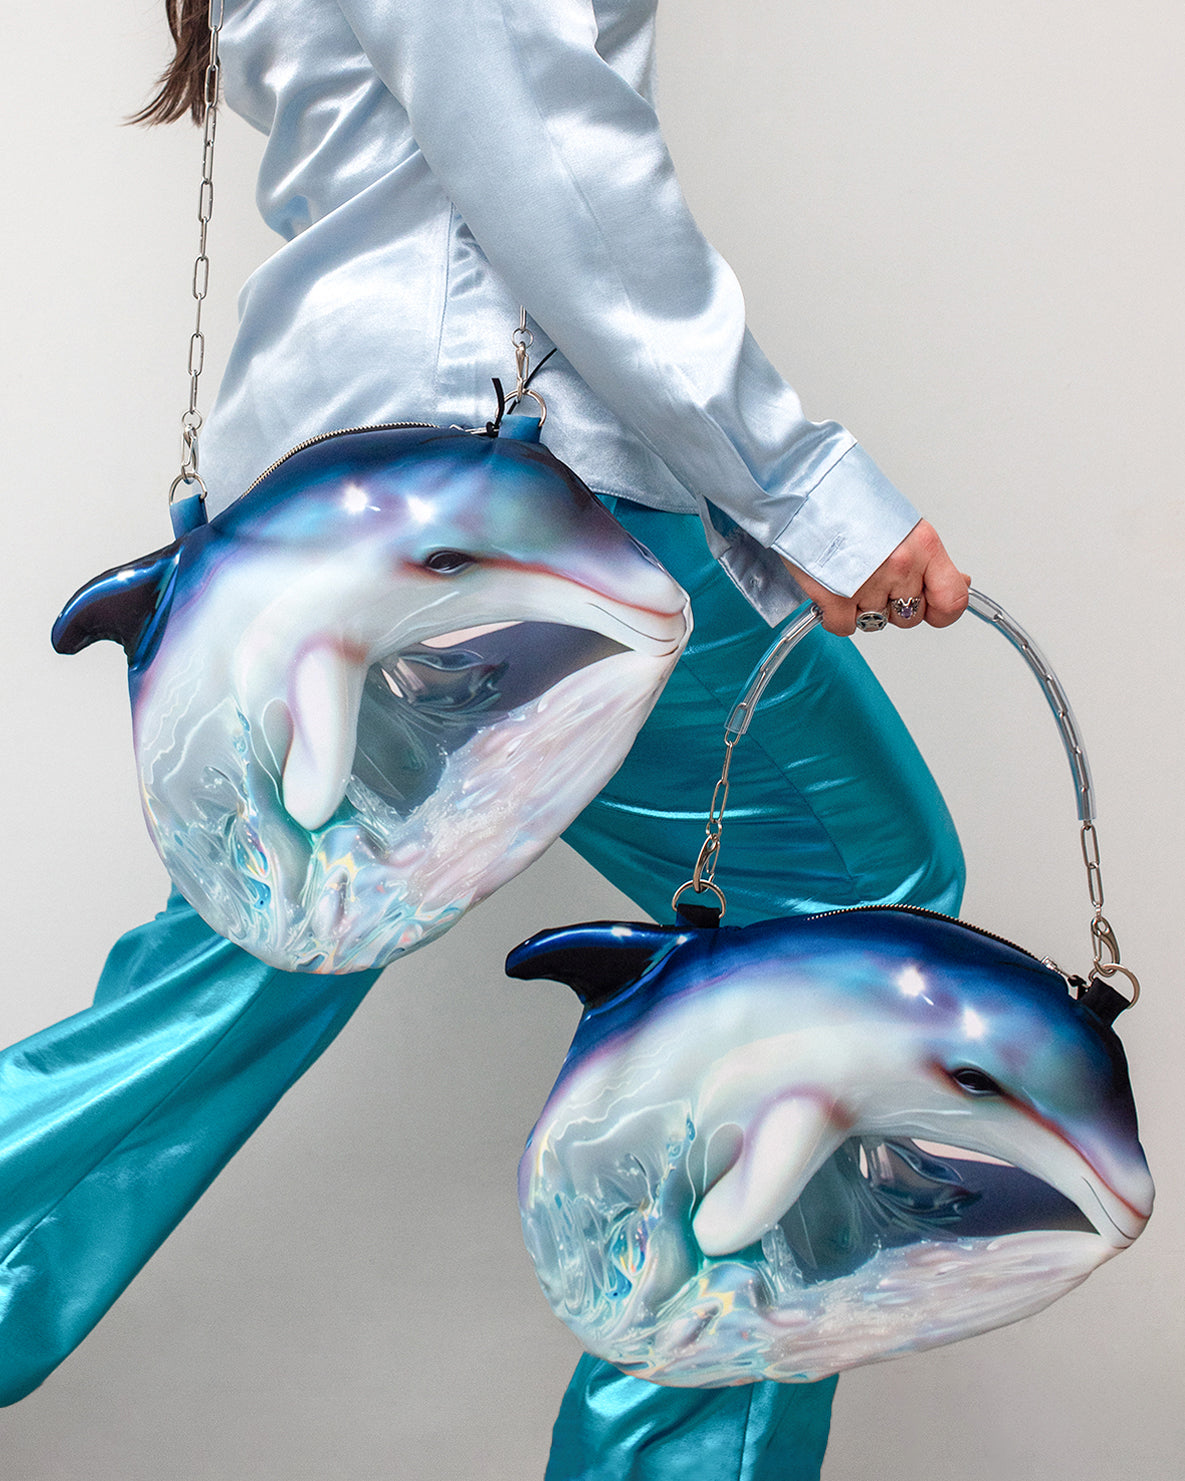 Dolphin Bag